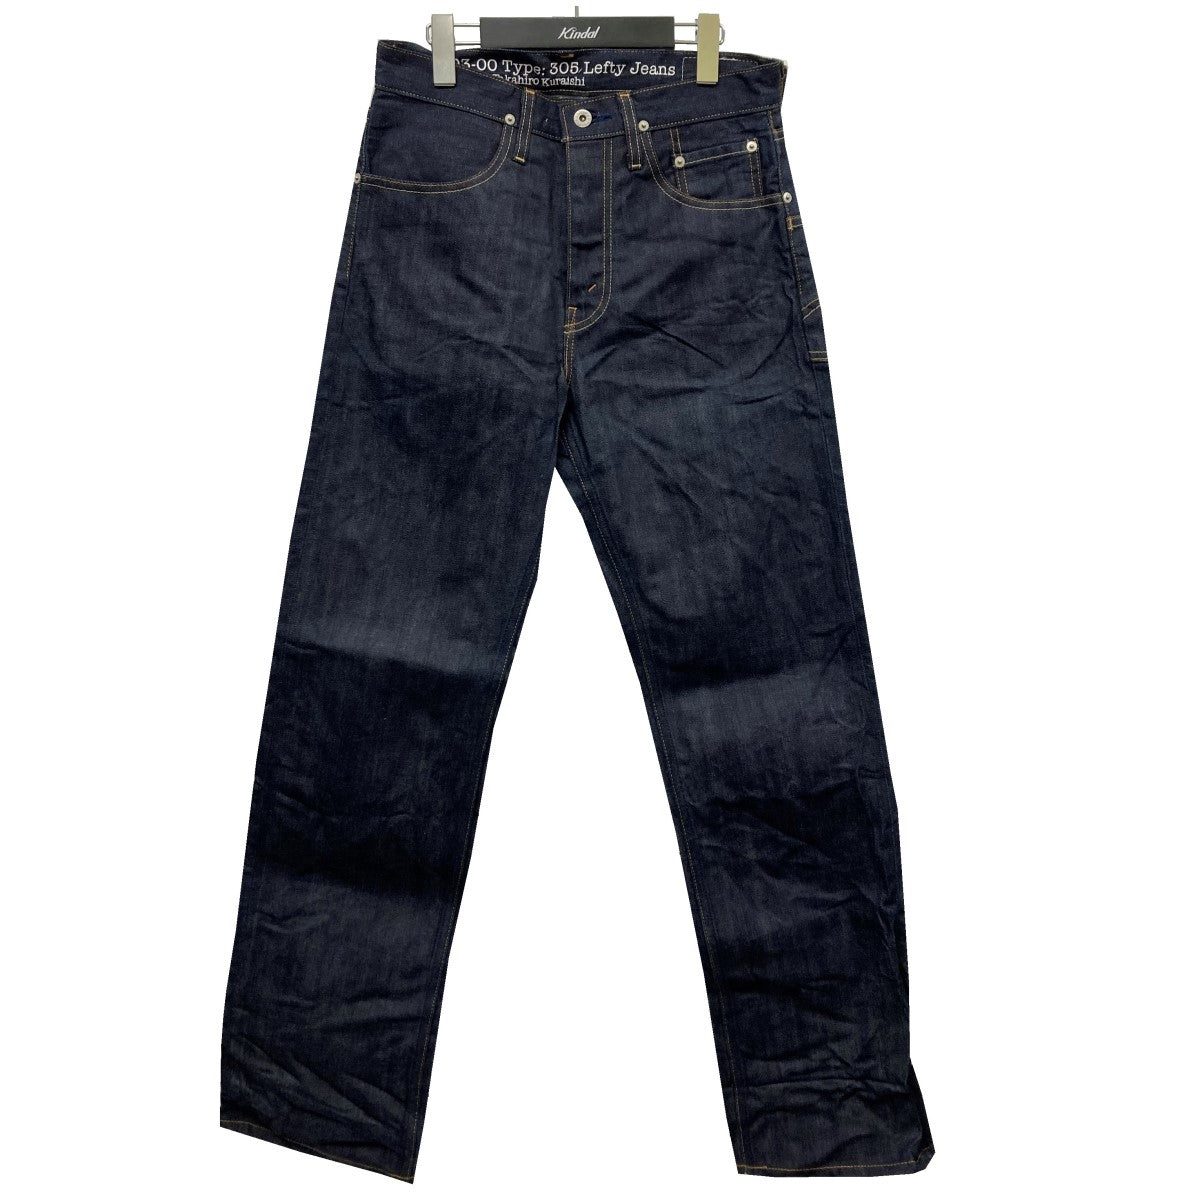 Levis Lefty Jeans by Takahiro Kuraishi(リーバイス レフティー ジーン タカヒロクライシ)  「LJB03-0001 Type305」デニムパンツ